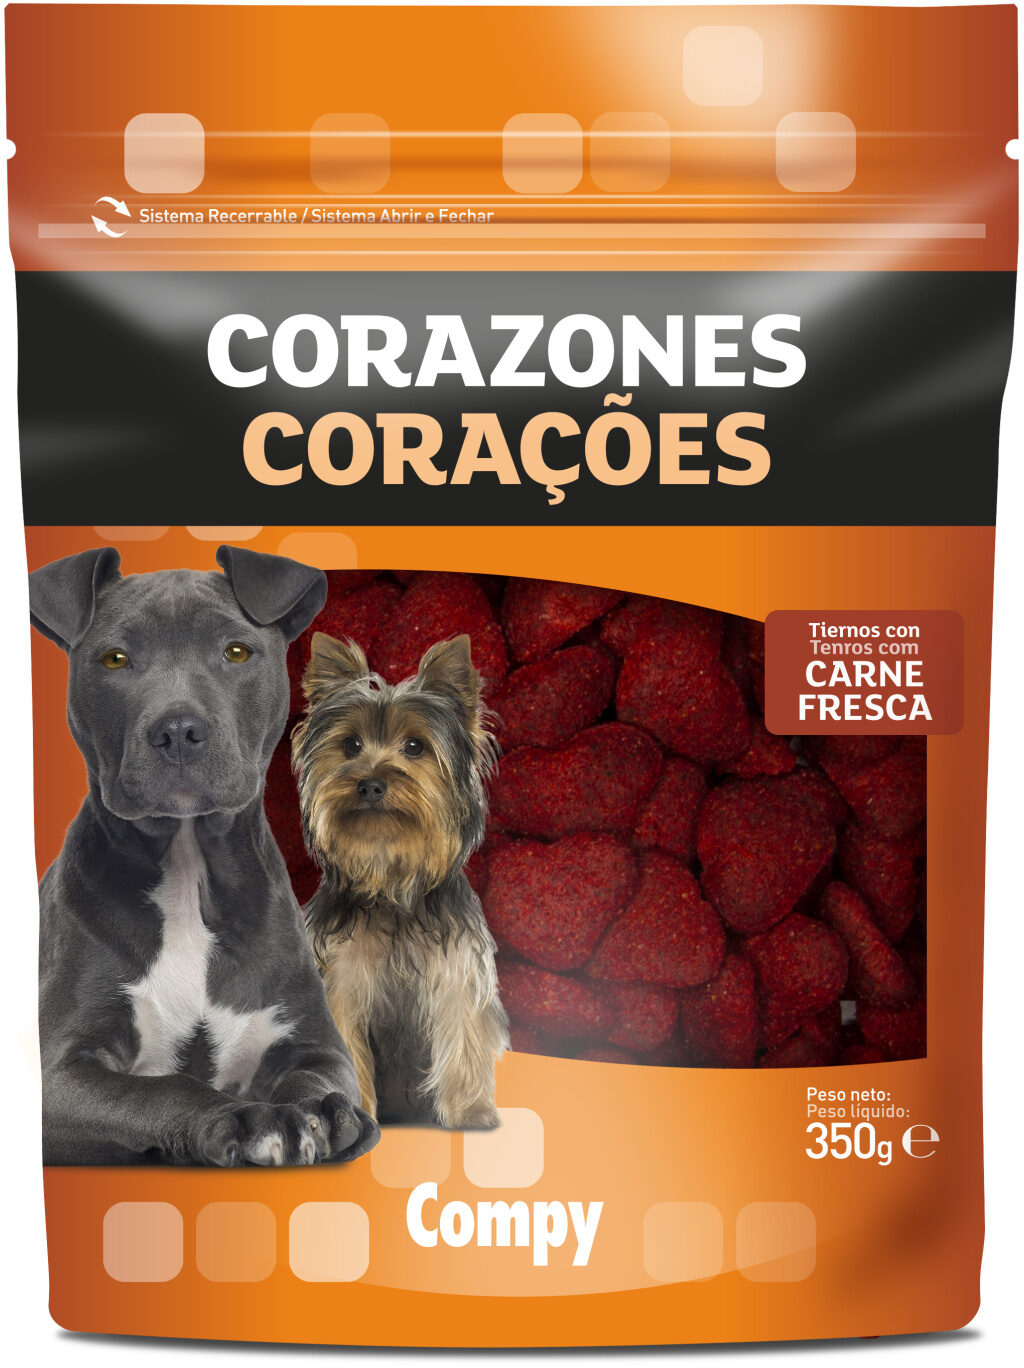 Corazones perros - Product - es